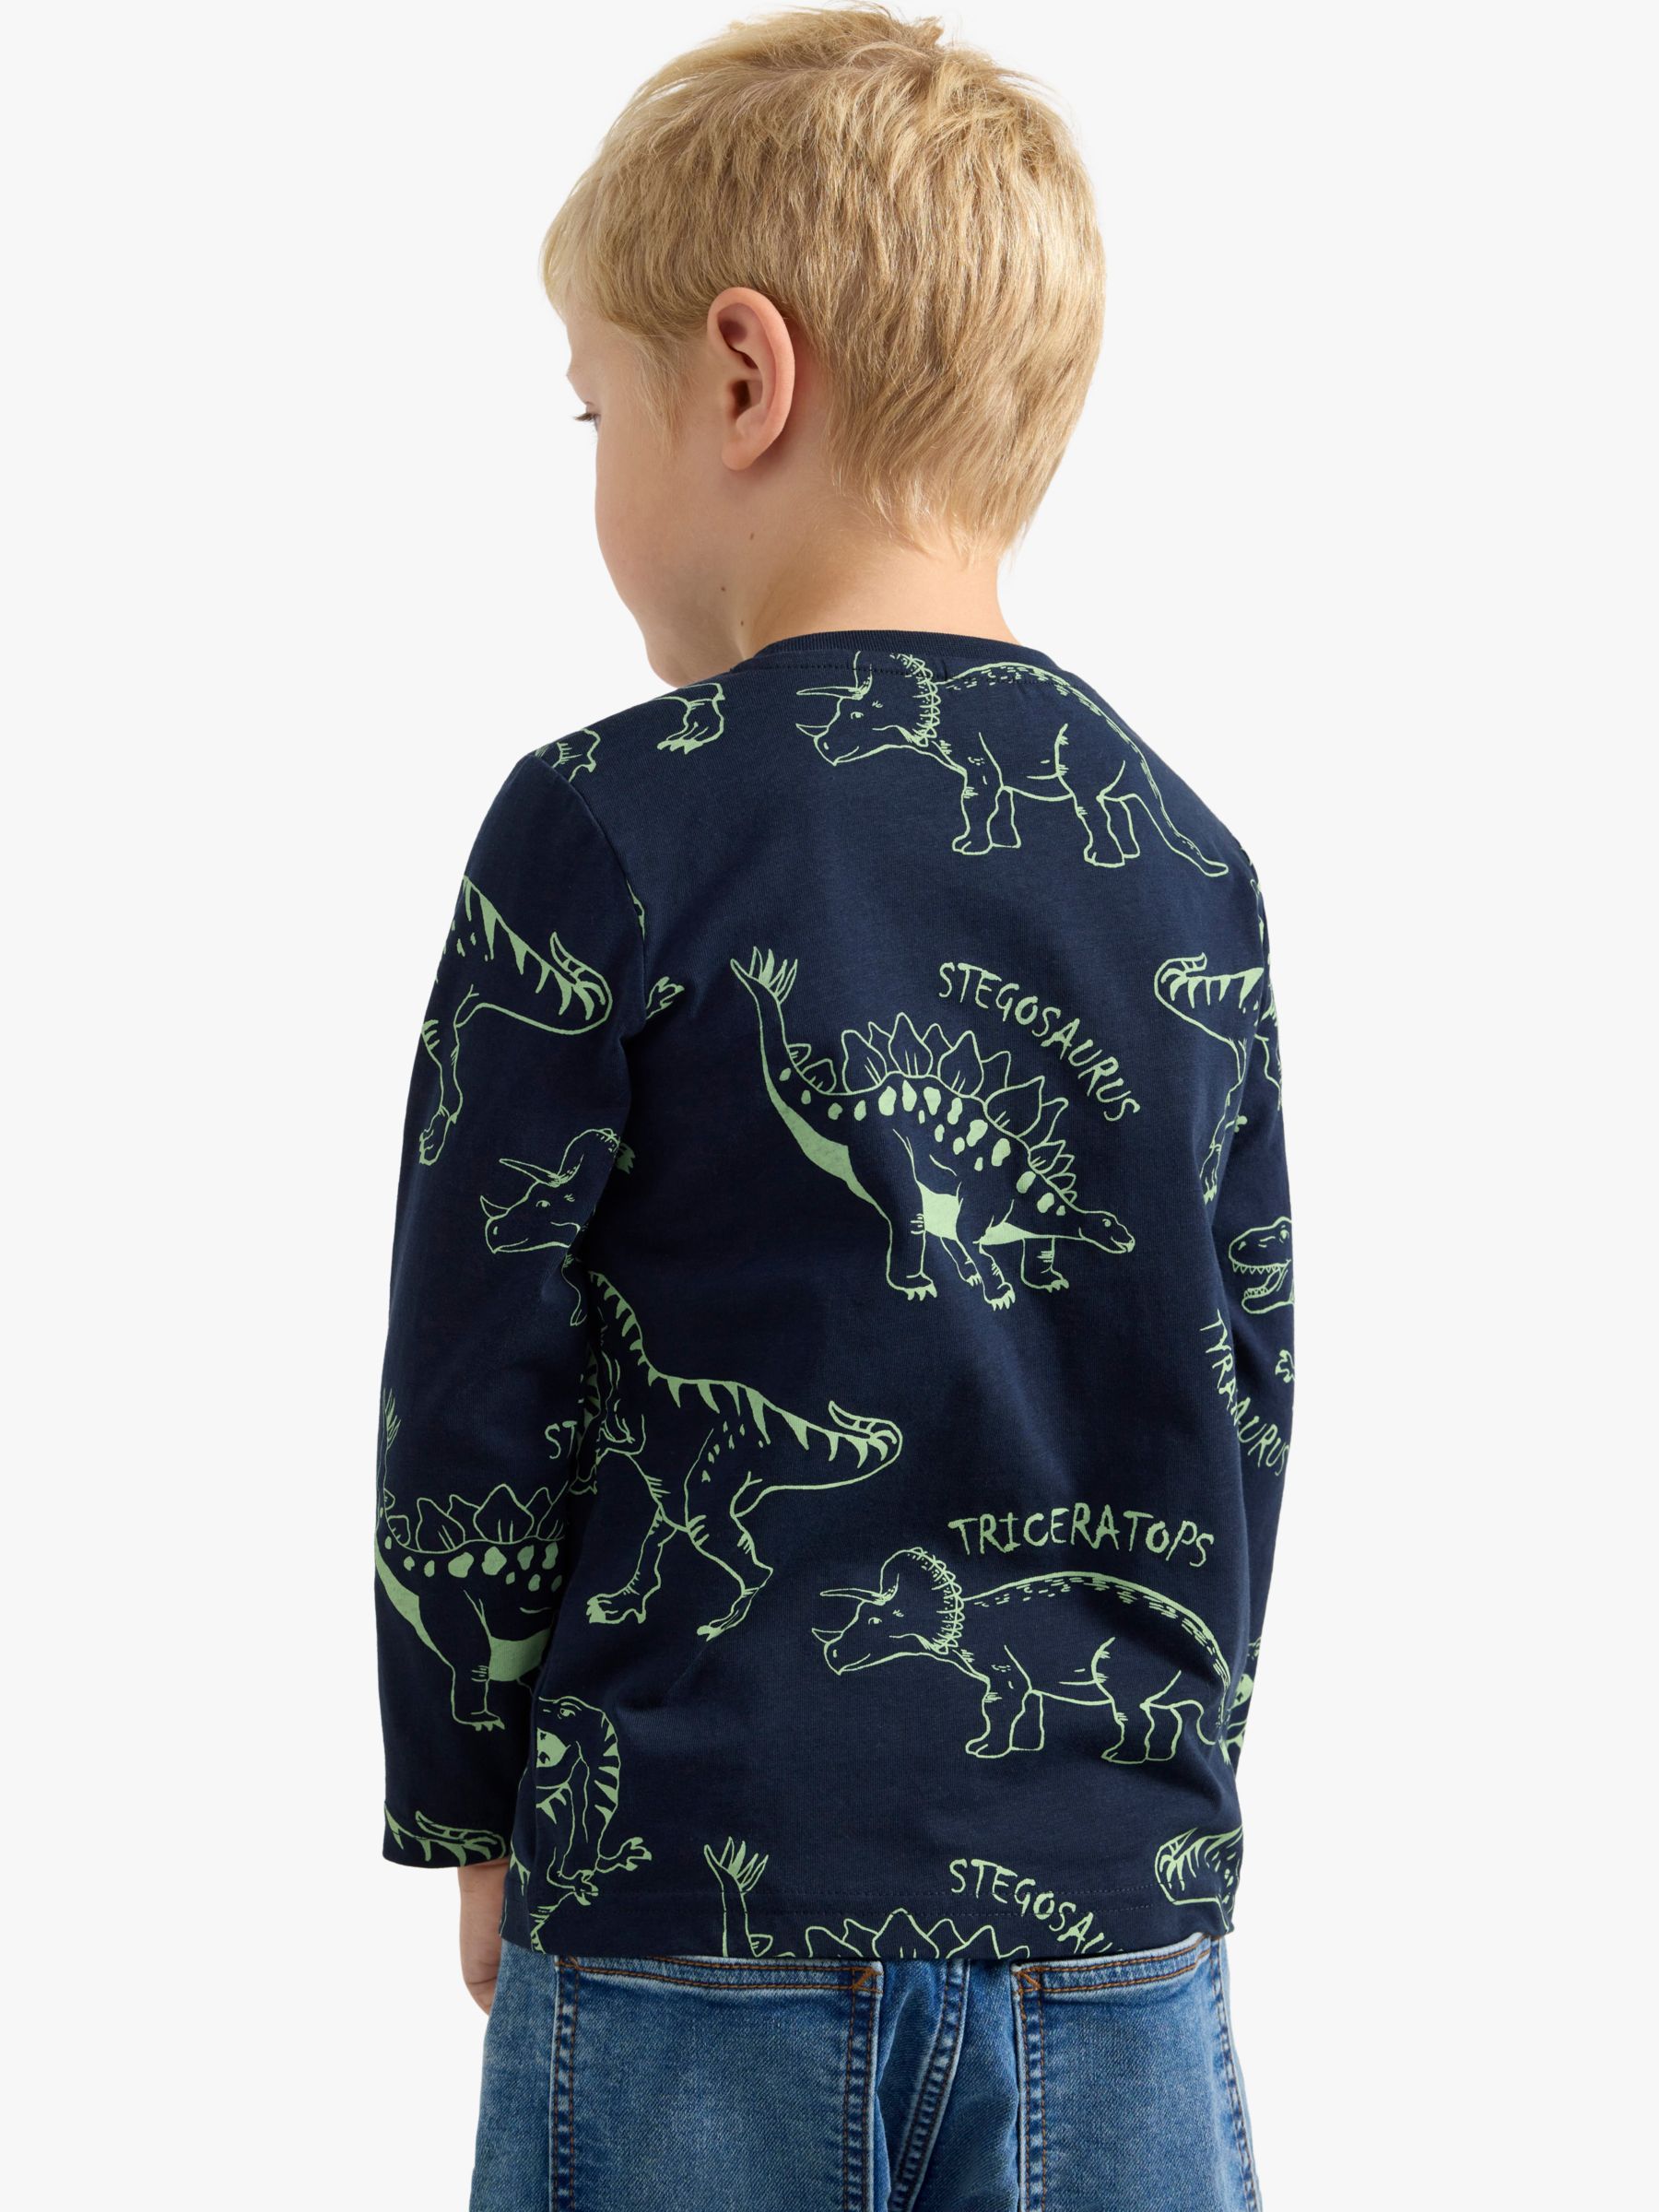 Lindex Kids' Dinosaur Long Sleeve Top, Dark Navy, 2-3 years